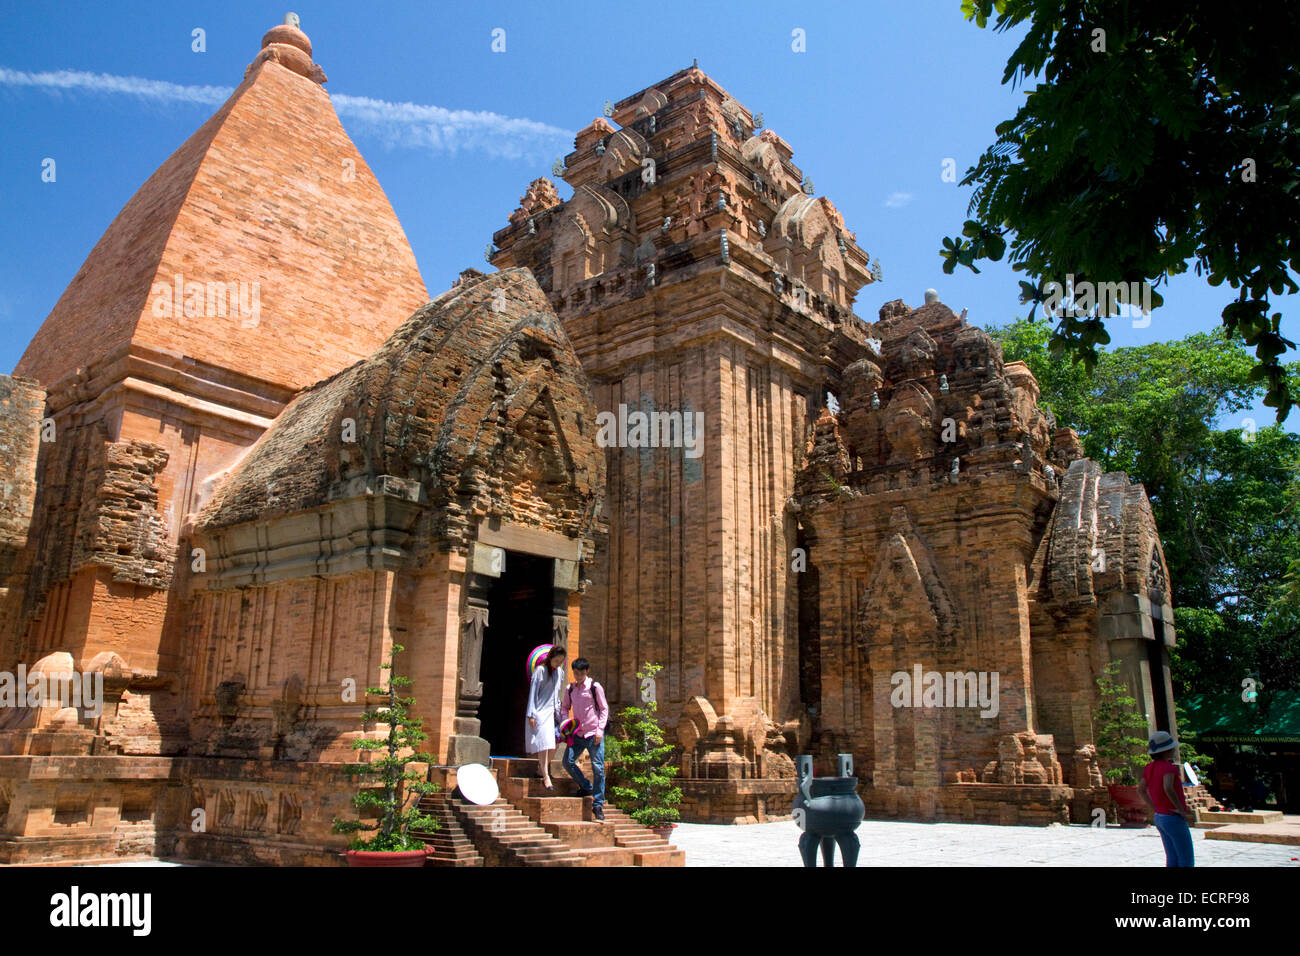 Po Nagar Cham tower est un temple situé dans la cité médiévale de Kauthara près de Nha Trang, Vietnam. Banque D'Images